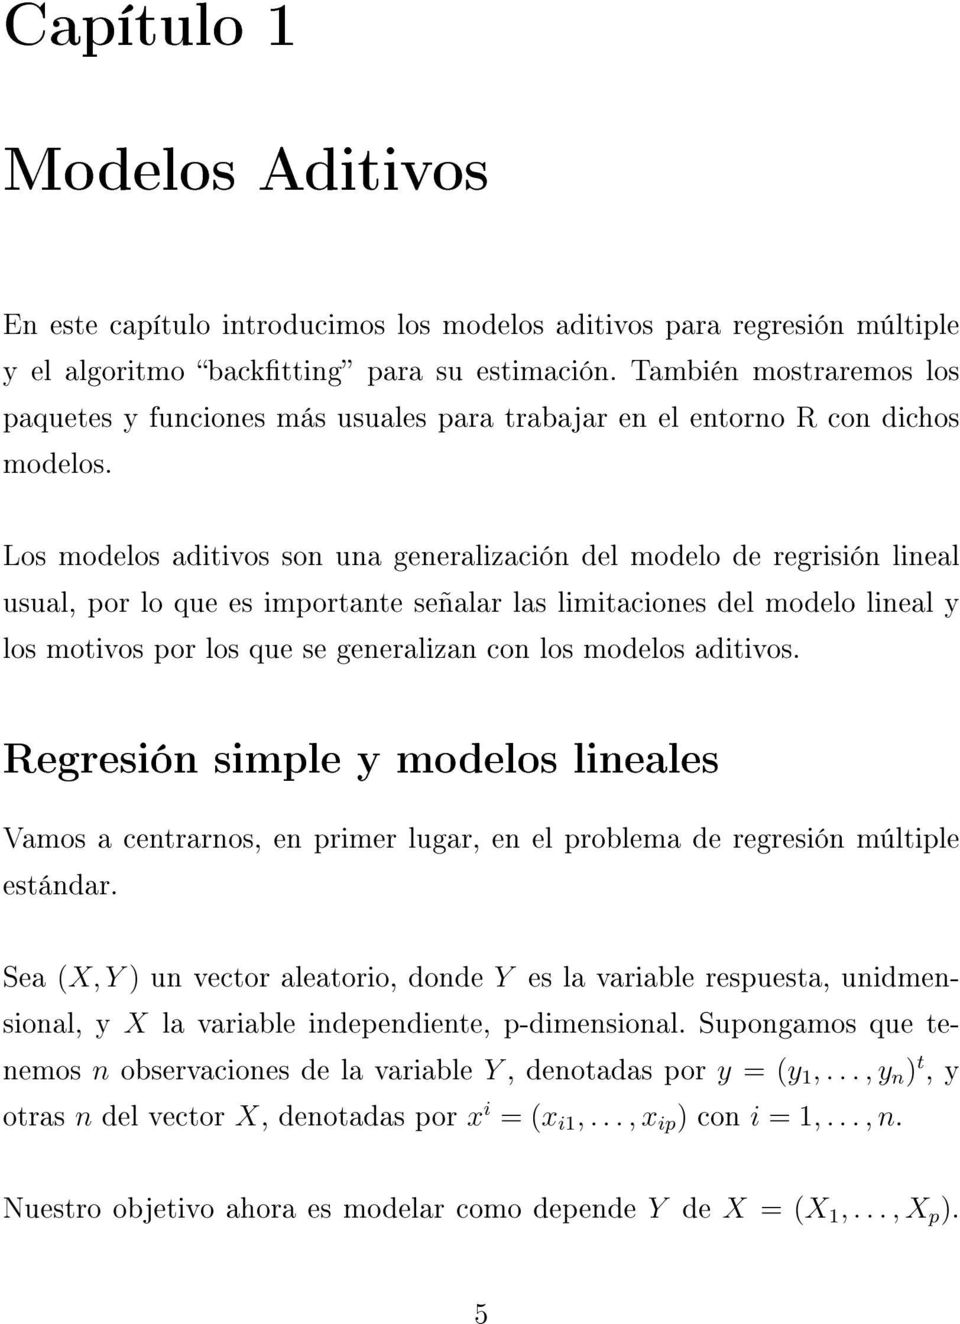 Los modelos aditivos son una generalización del modelo de regrisión lineal usual, por lo que es importante señalar las limitaciones del modelo lineal y los motivos por los que se generalizan con los